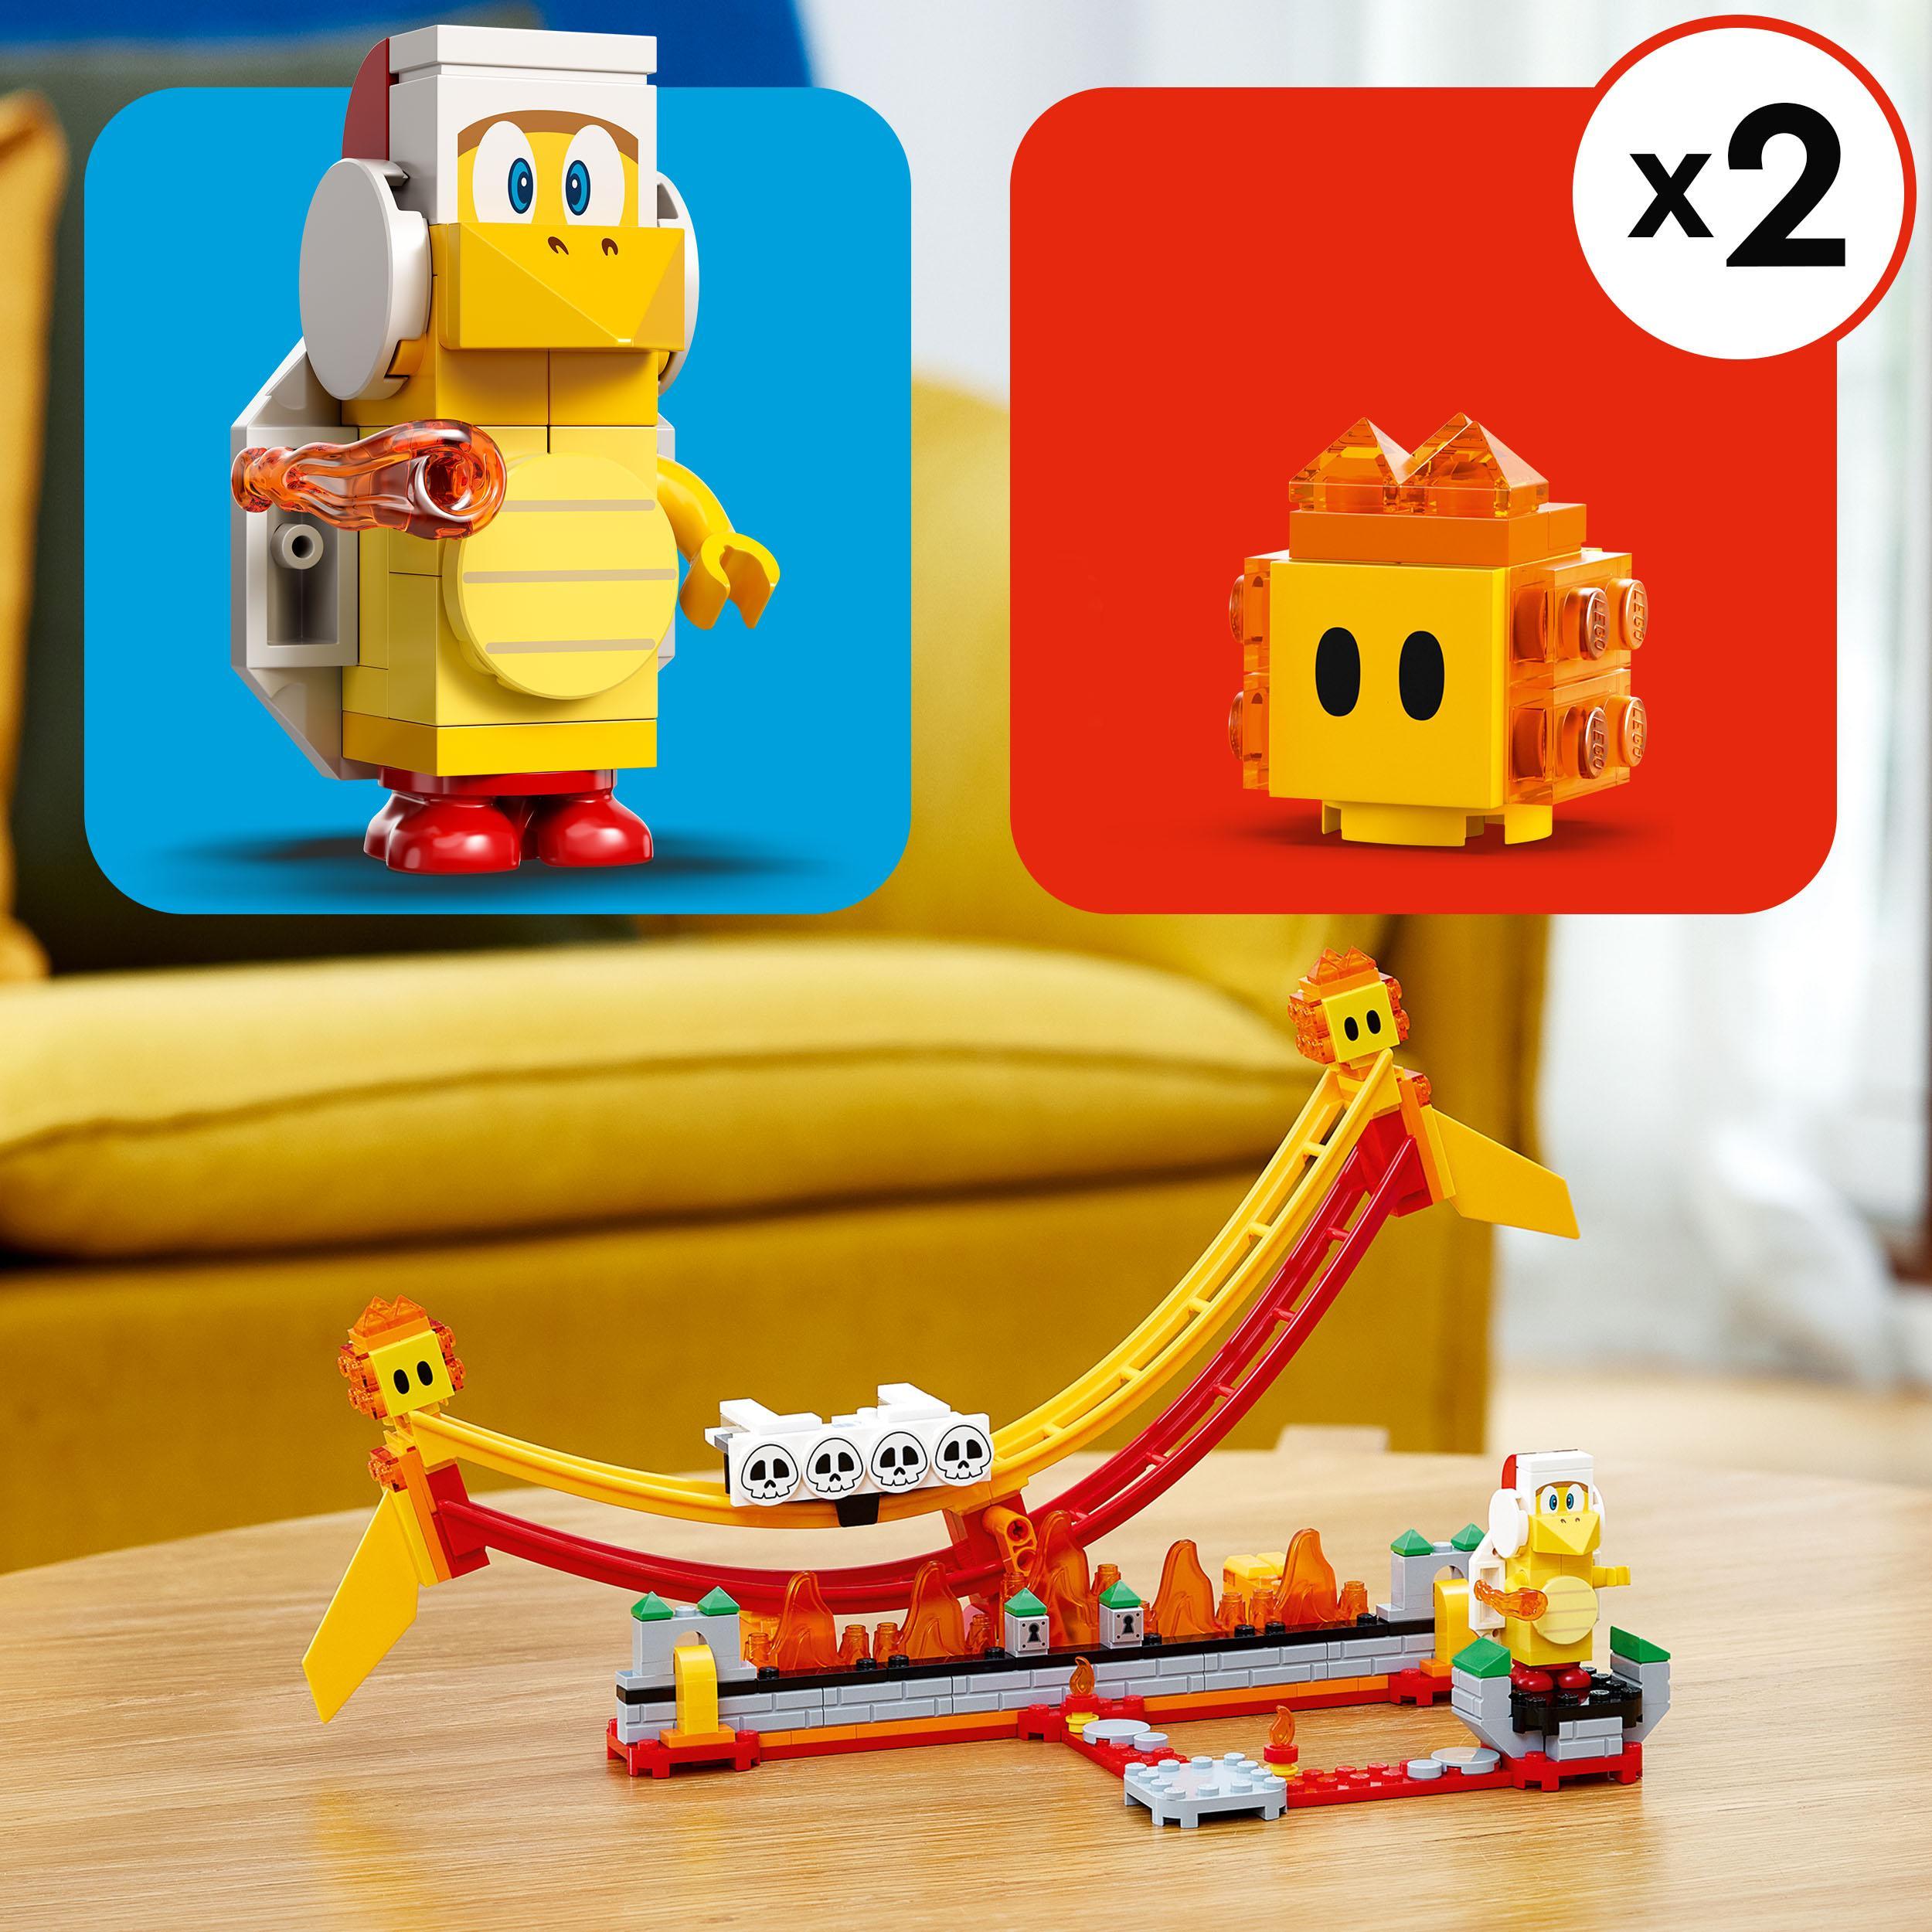 Lego super mario 71416 pack di espansione giro sull’onda lavica con figure di fuoco bros e 2 fiammetti, gioco da collezione - LEGO® Super Mario™, Super Mario